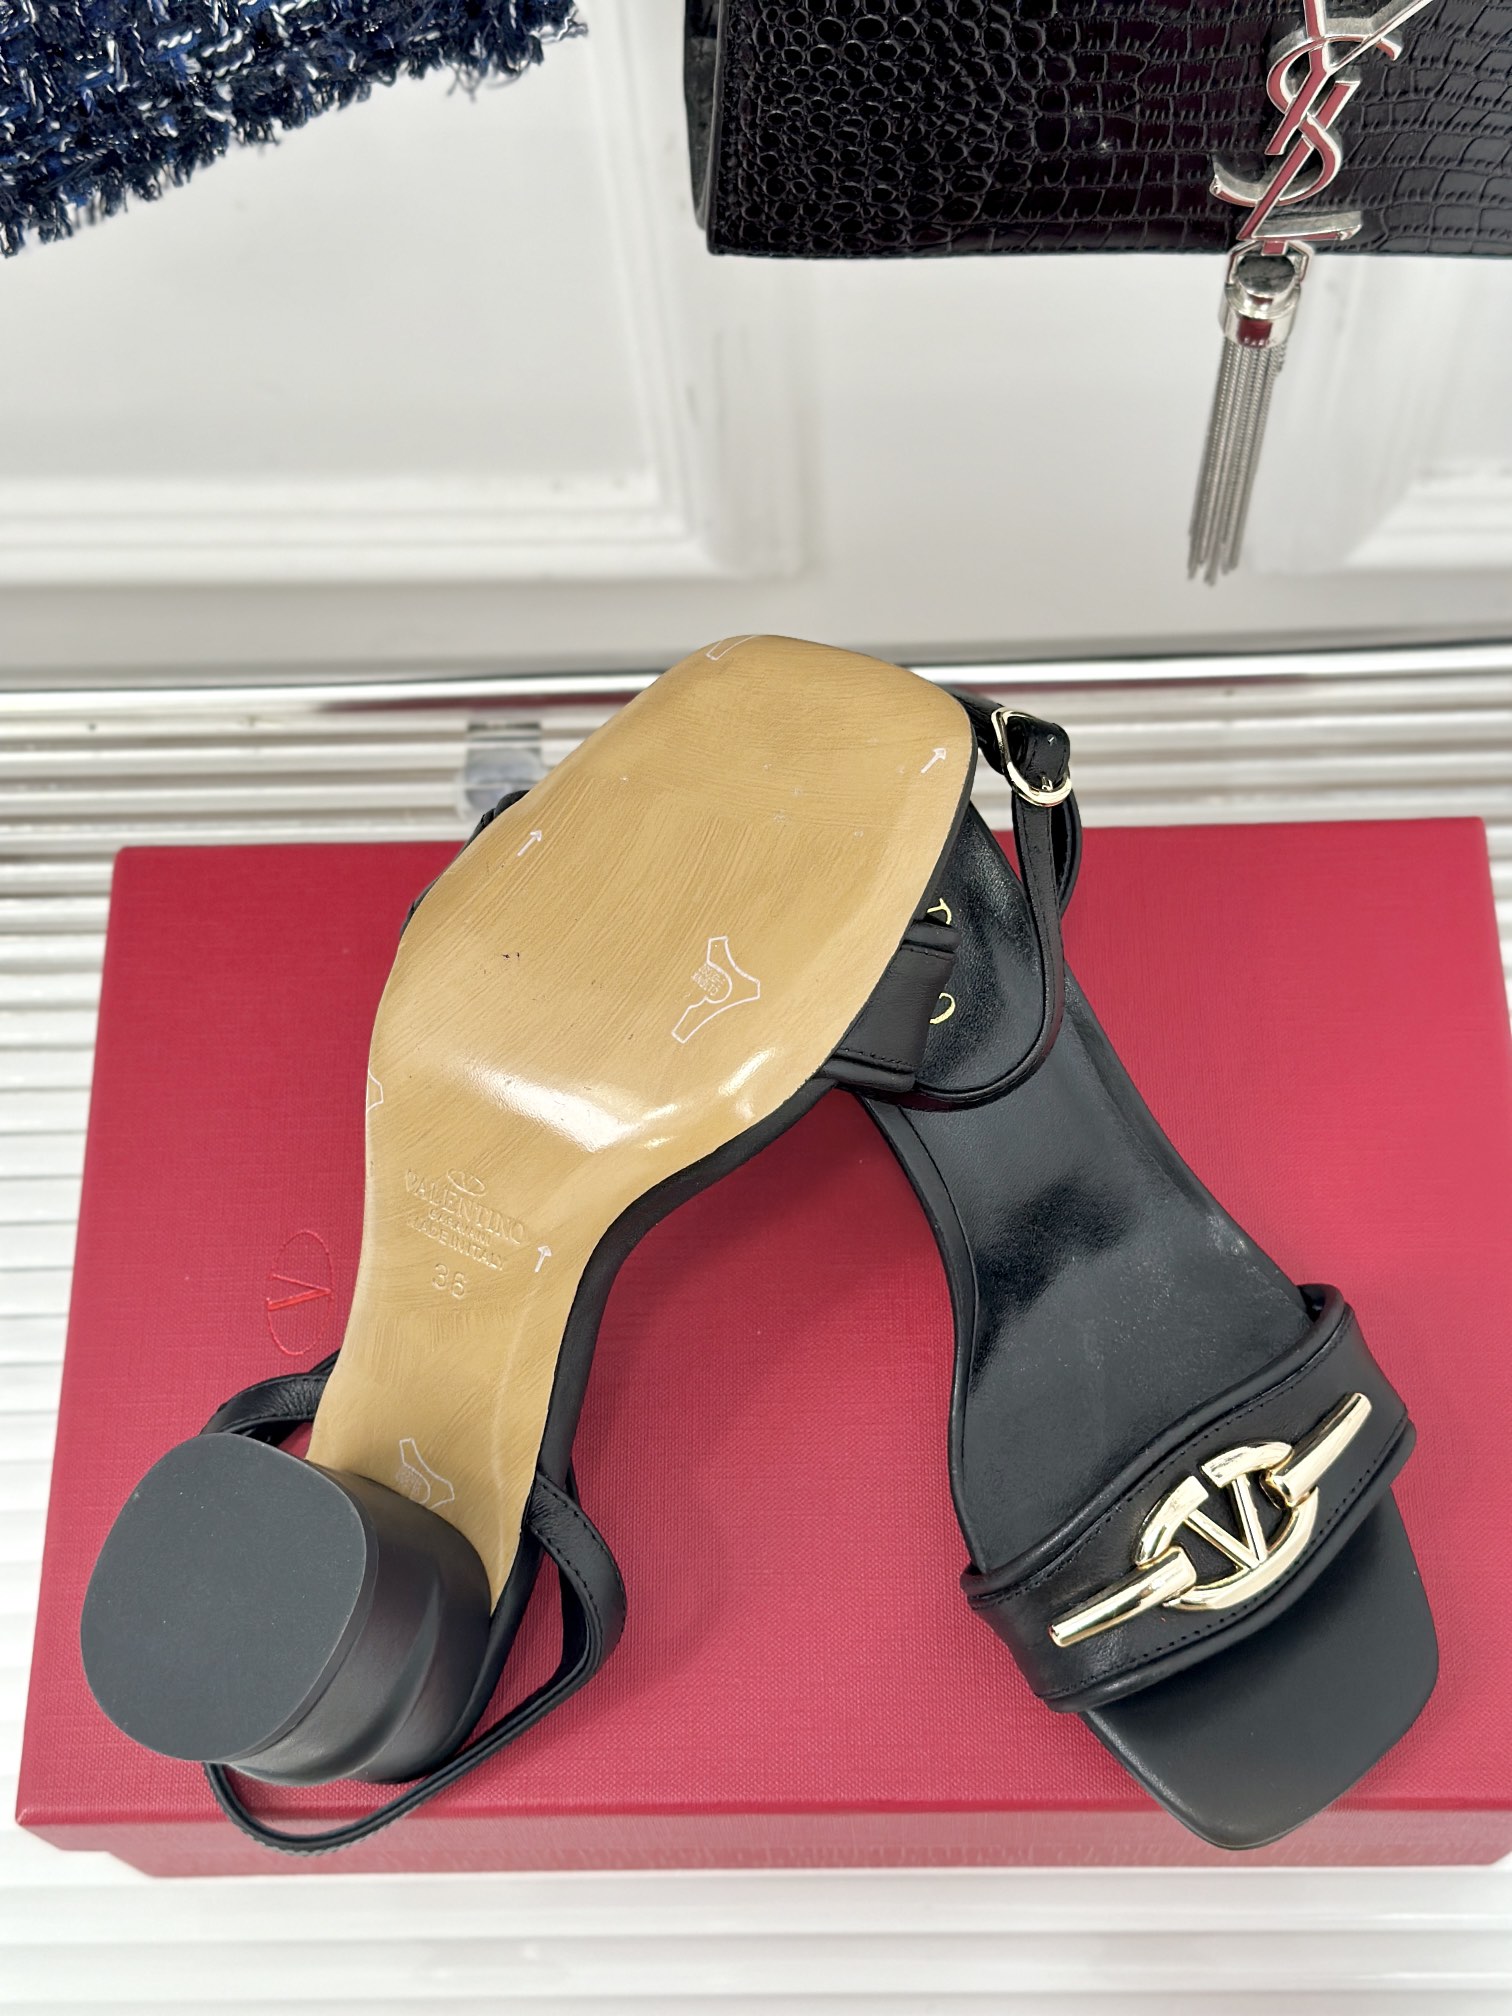 Valentin华伦天伦24s春夏新品粗跟凉拖鞋系列经典的大V扣元素设计彰显了品牌独有的风格奢华时尚极有